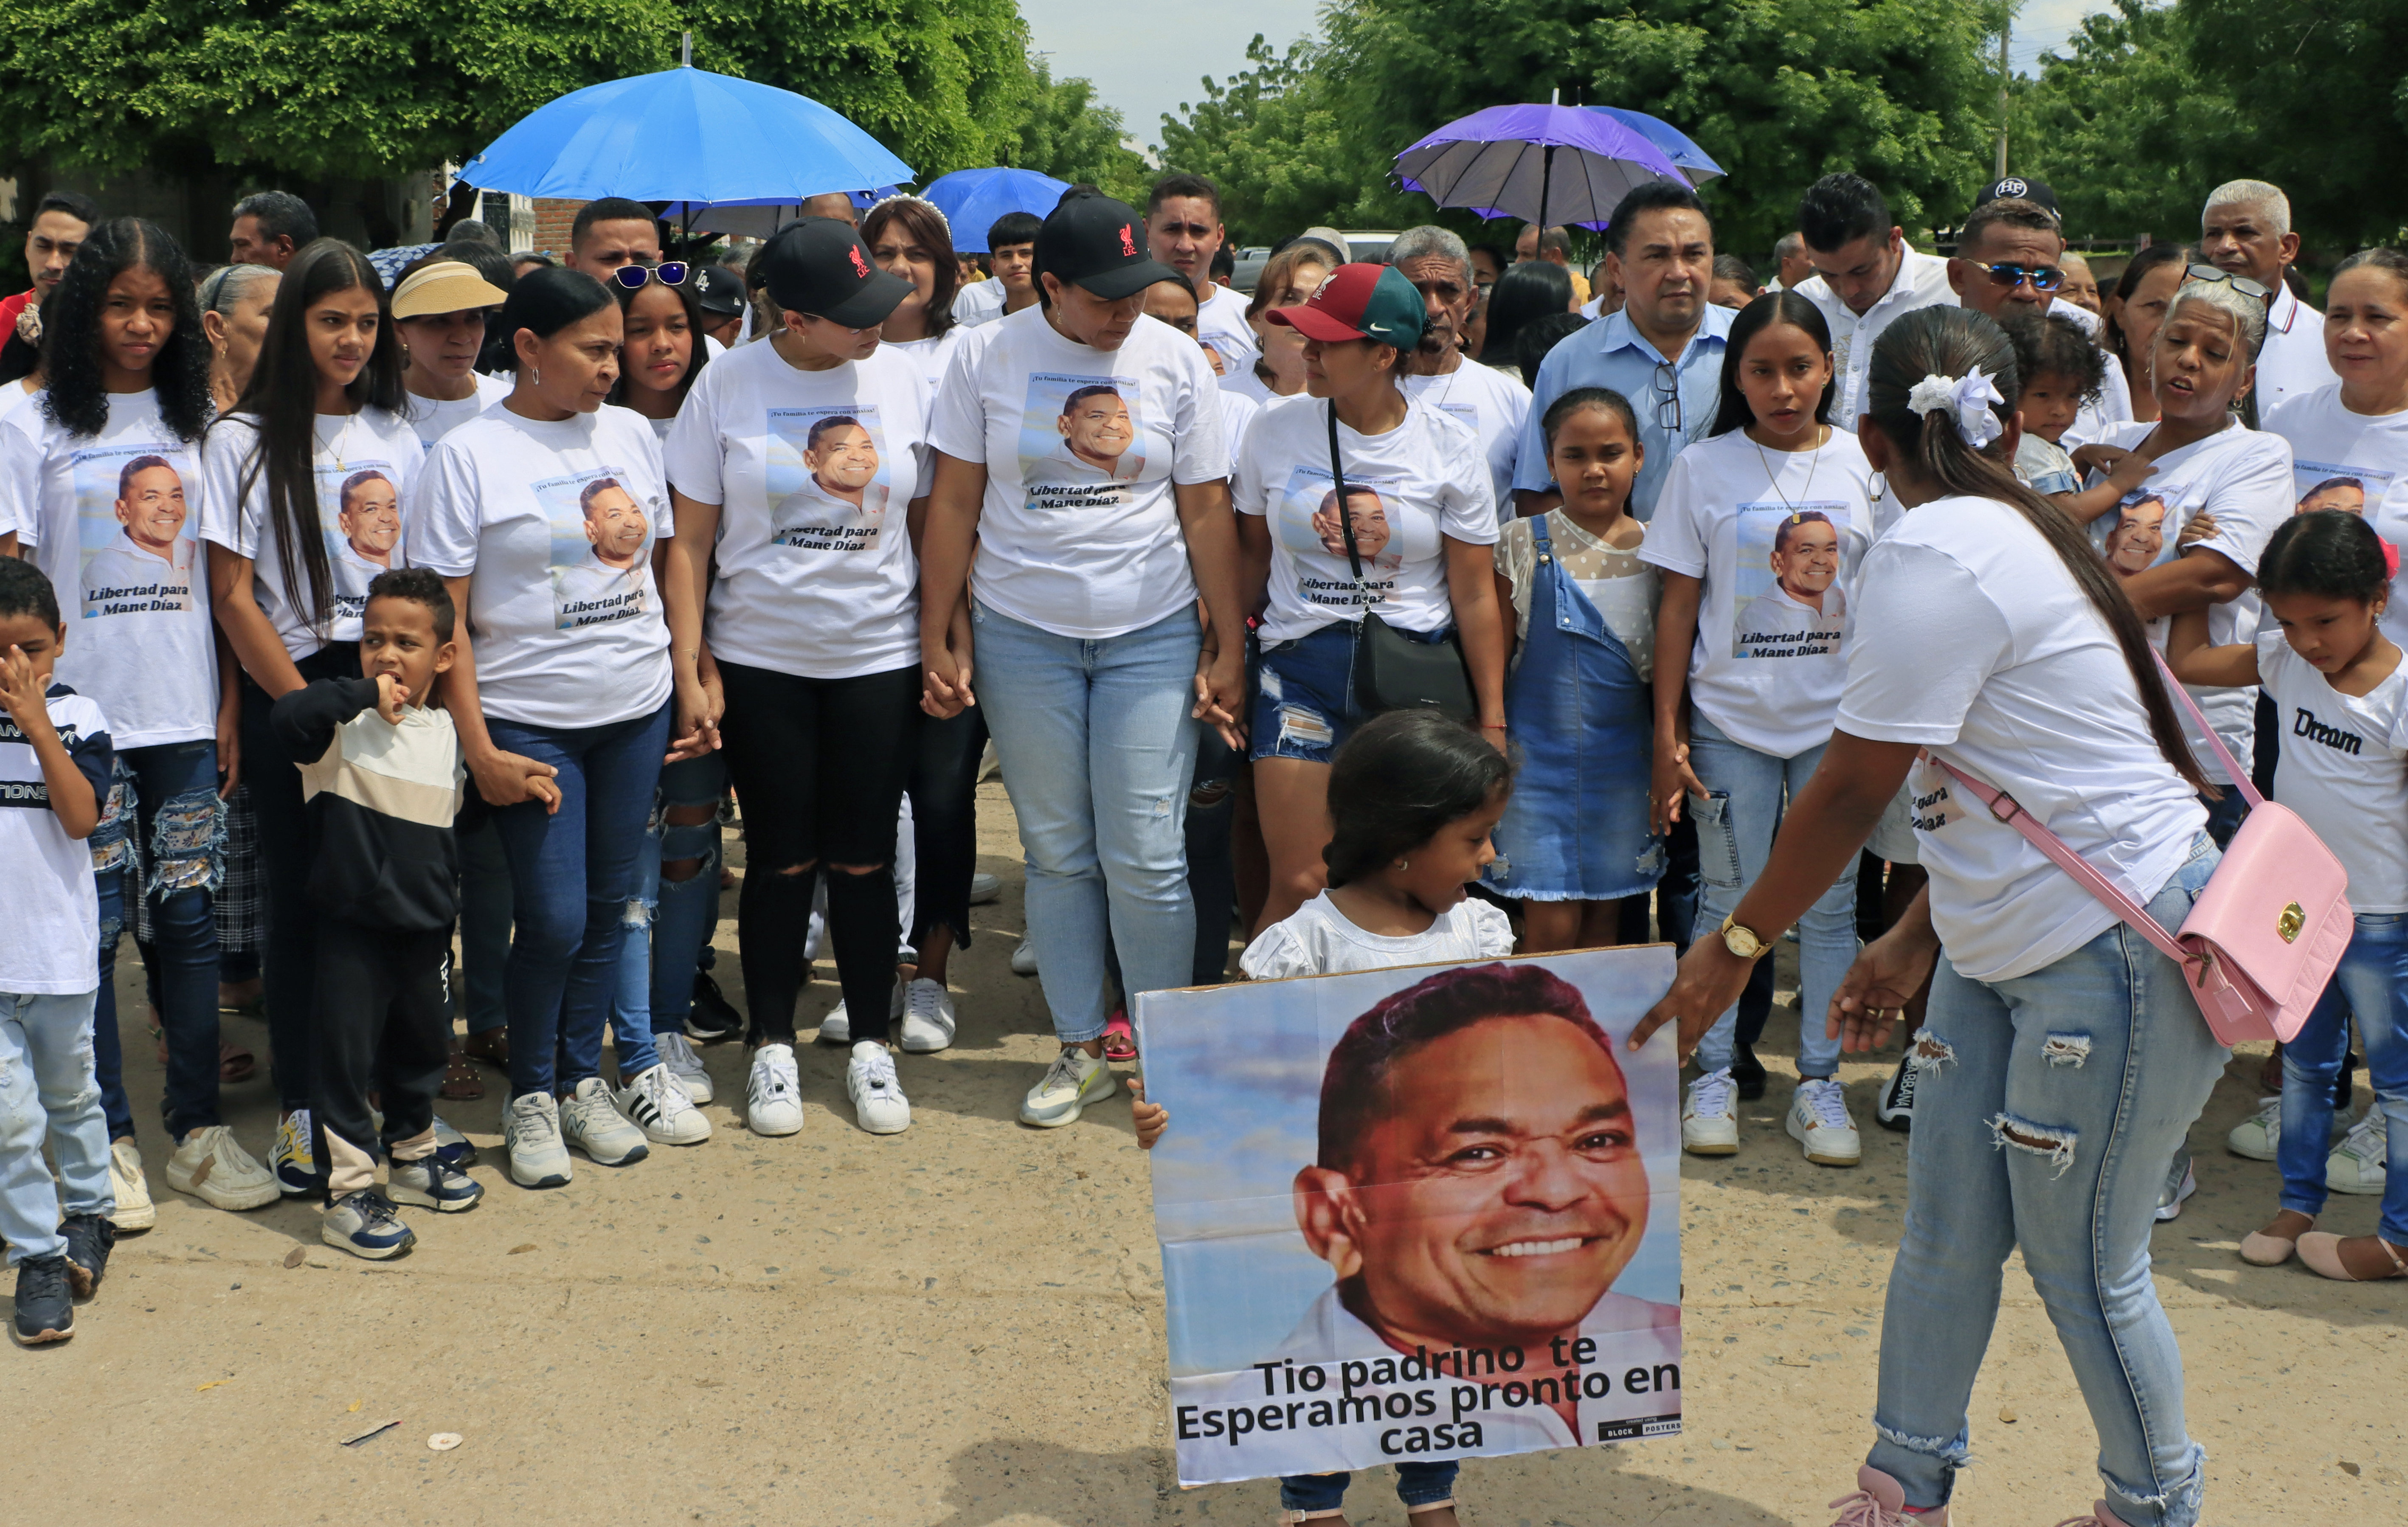 Demonstranten gingen auf die Straße von Barrancas und forderten die Freilassung von Luis Manuel Diaz